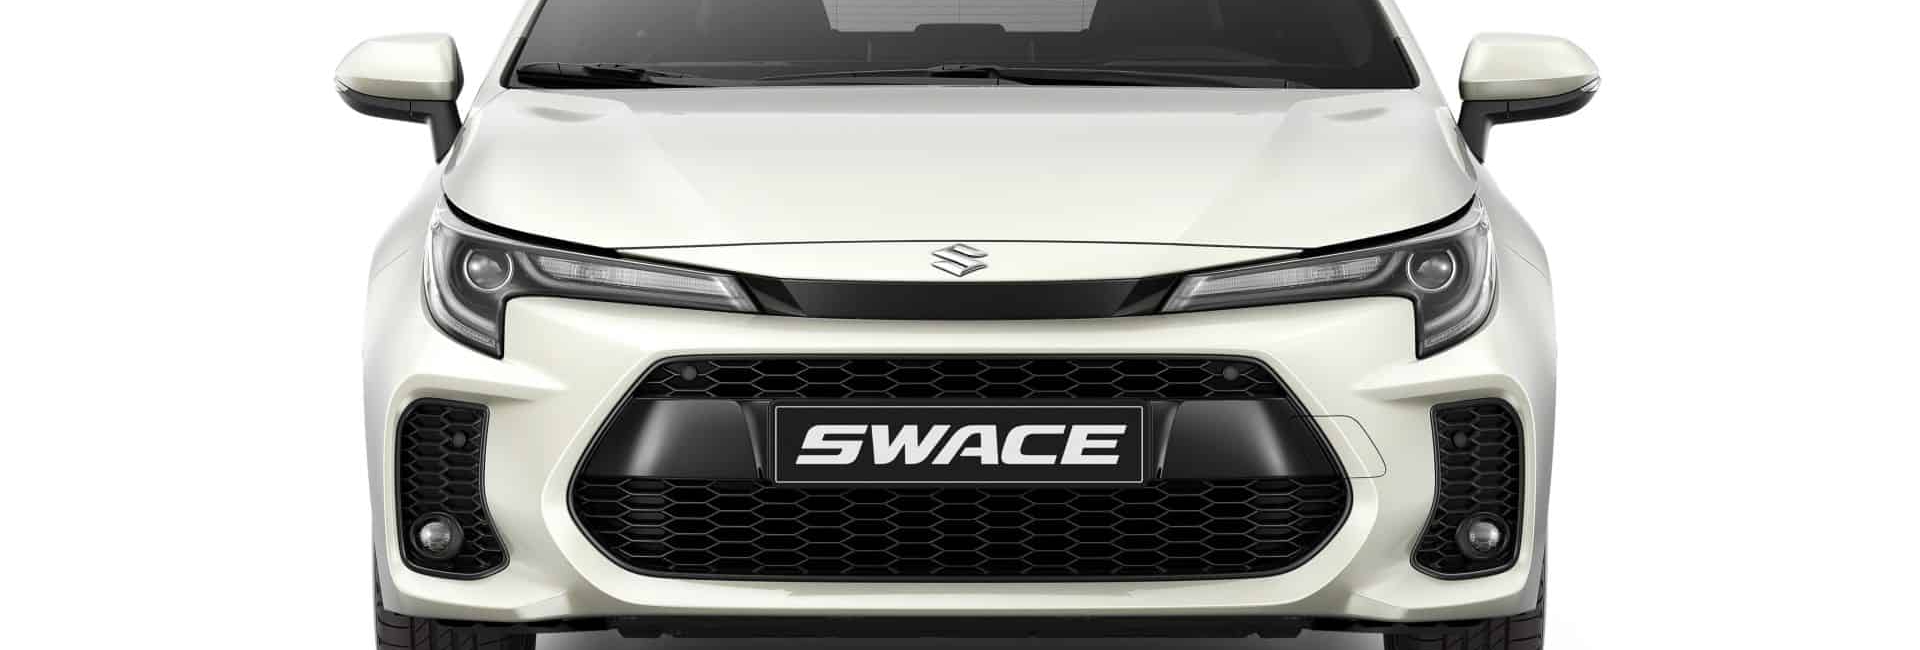 Megérkezett az új Suzuki Swace